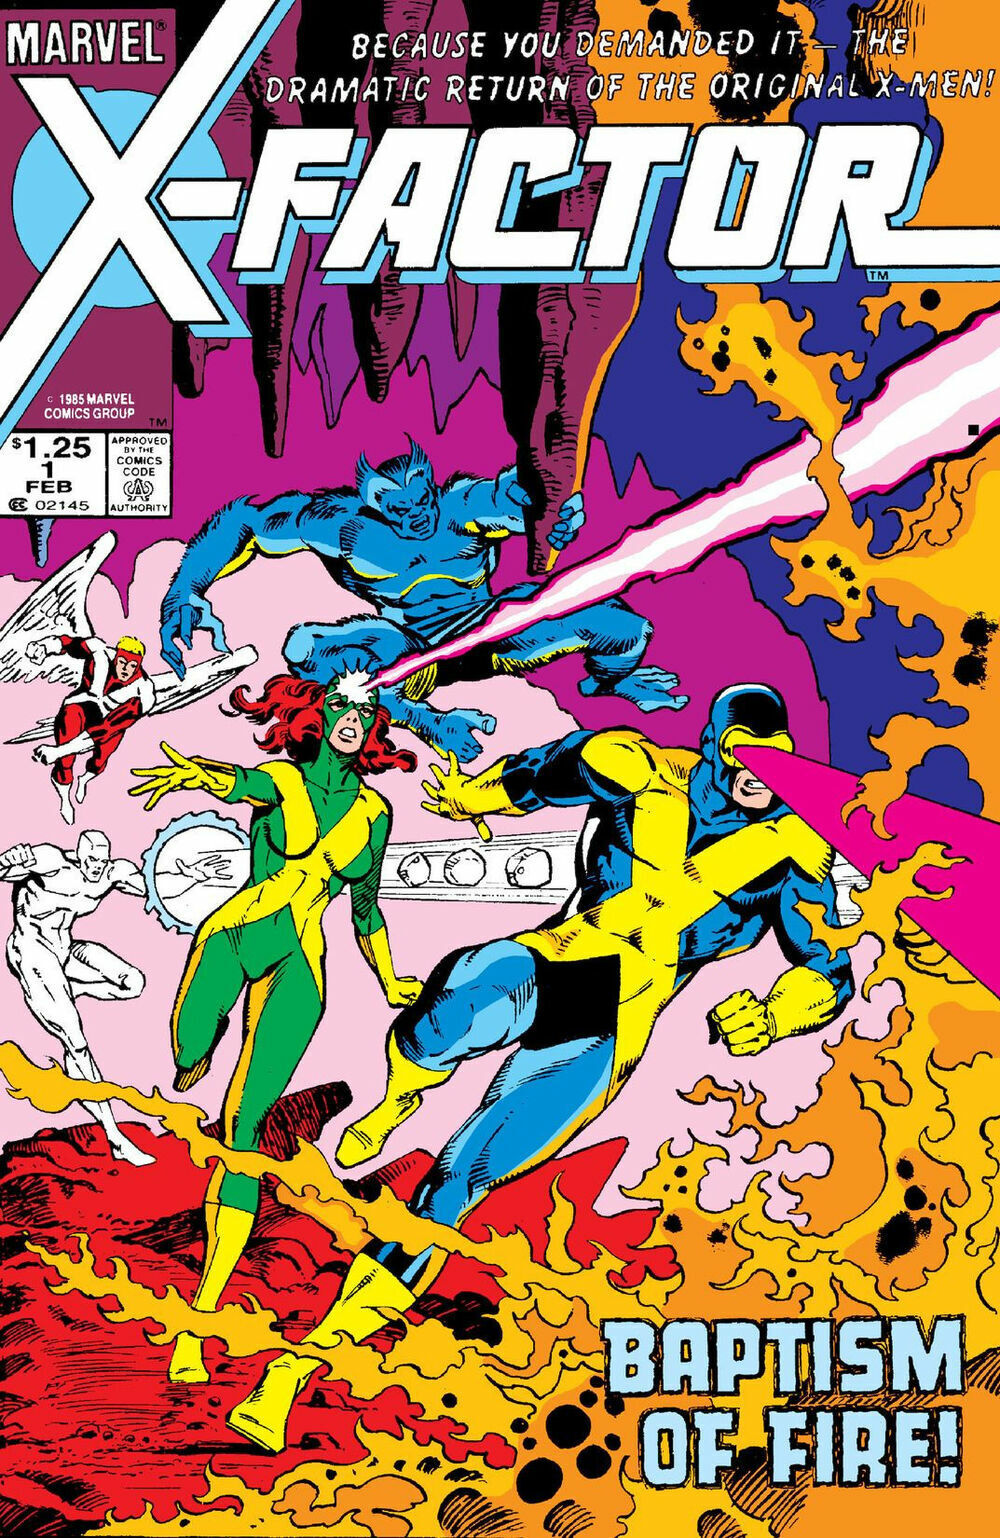 X-FACTOR VOL 1 #1-149 YOU PICK & CHOOSE ISSUES FN MARVEL COMICS 1986-1998 X-MEN